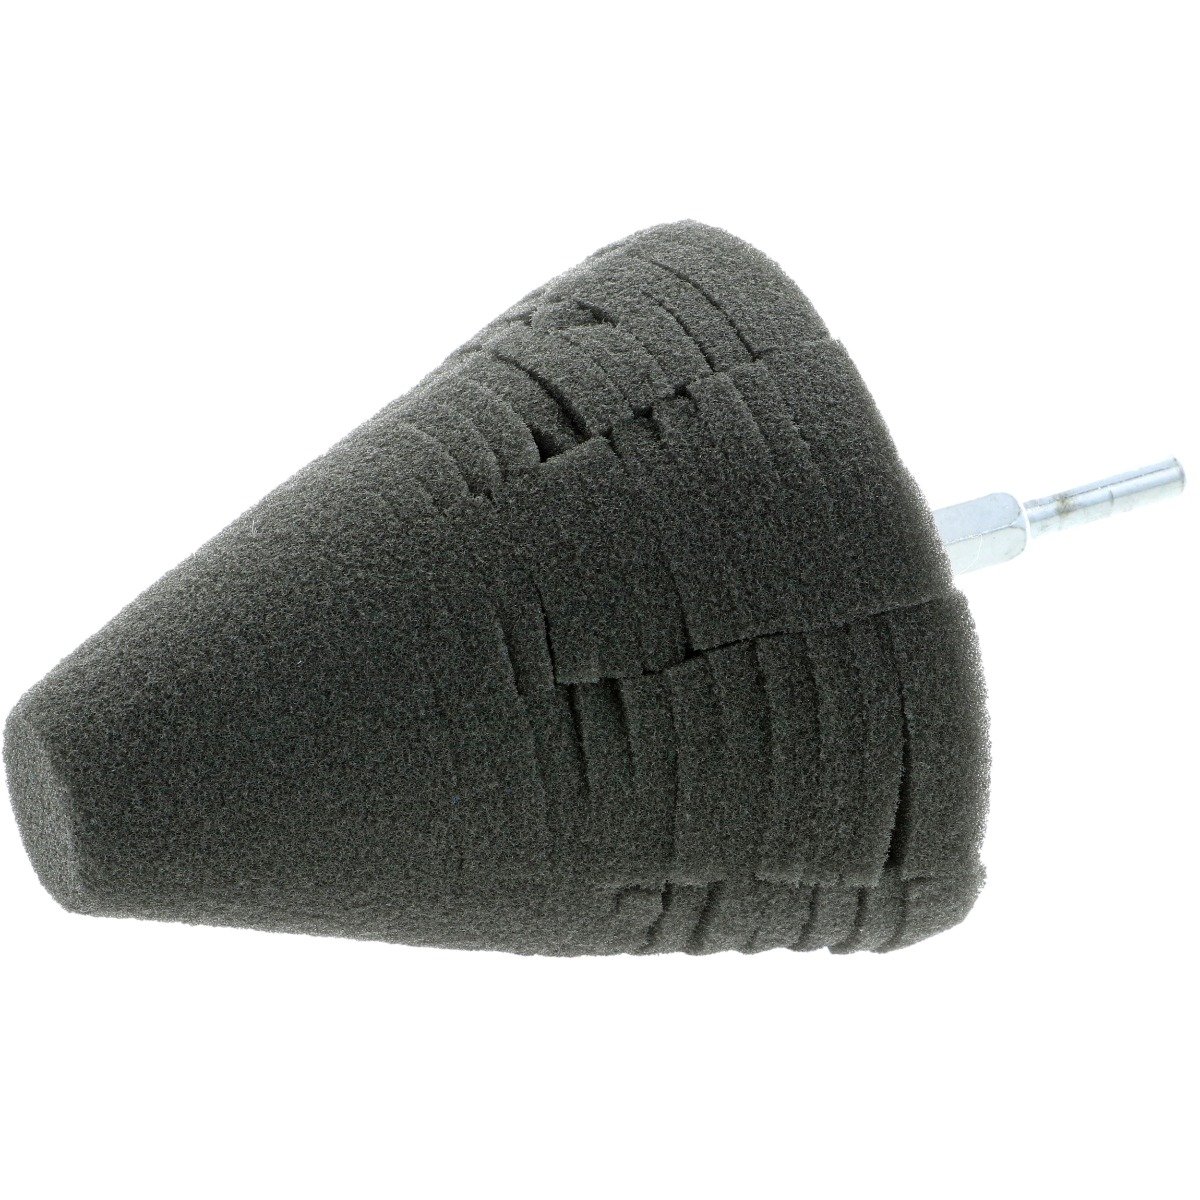 Uni-Cone Black Finishing Cone - 4 inch